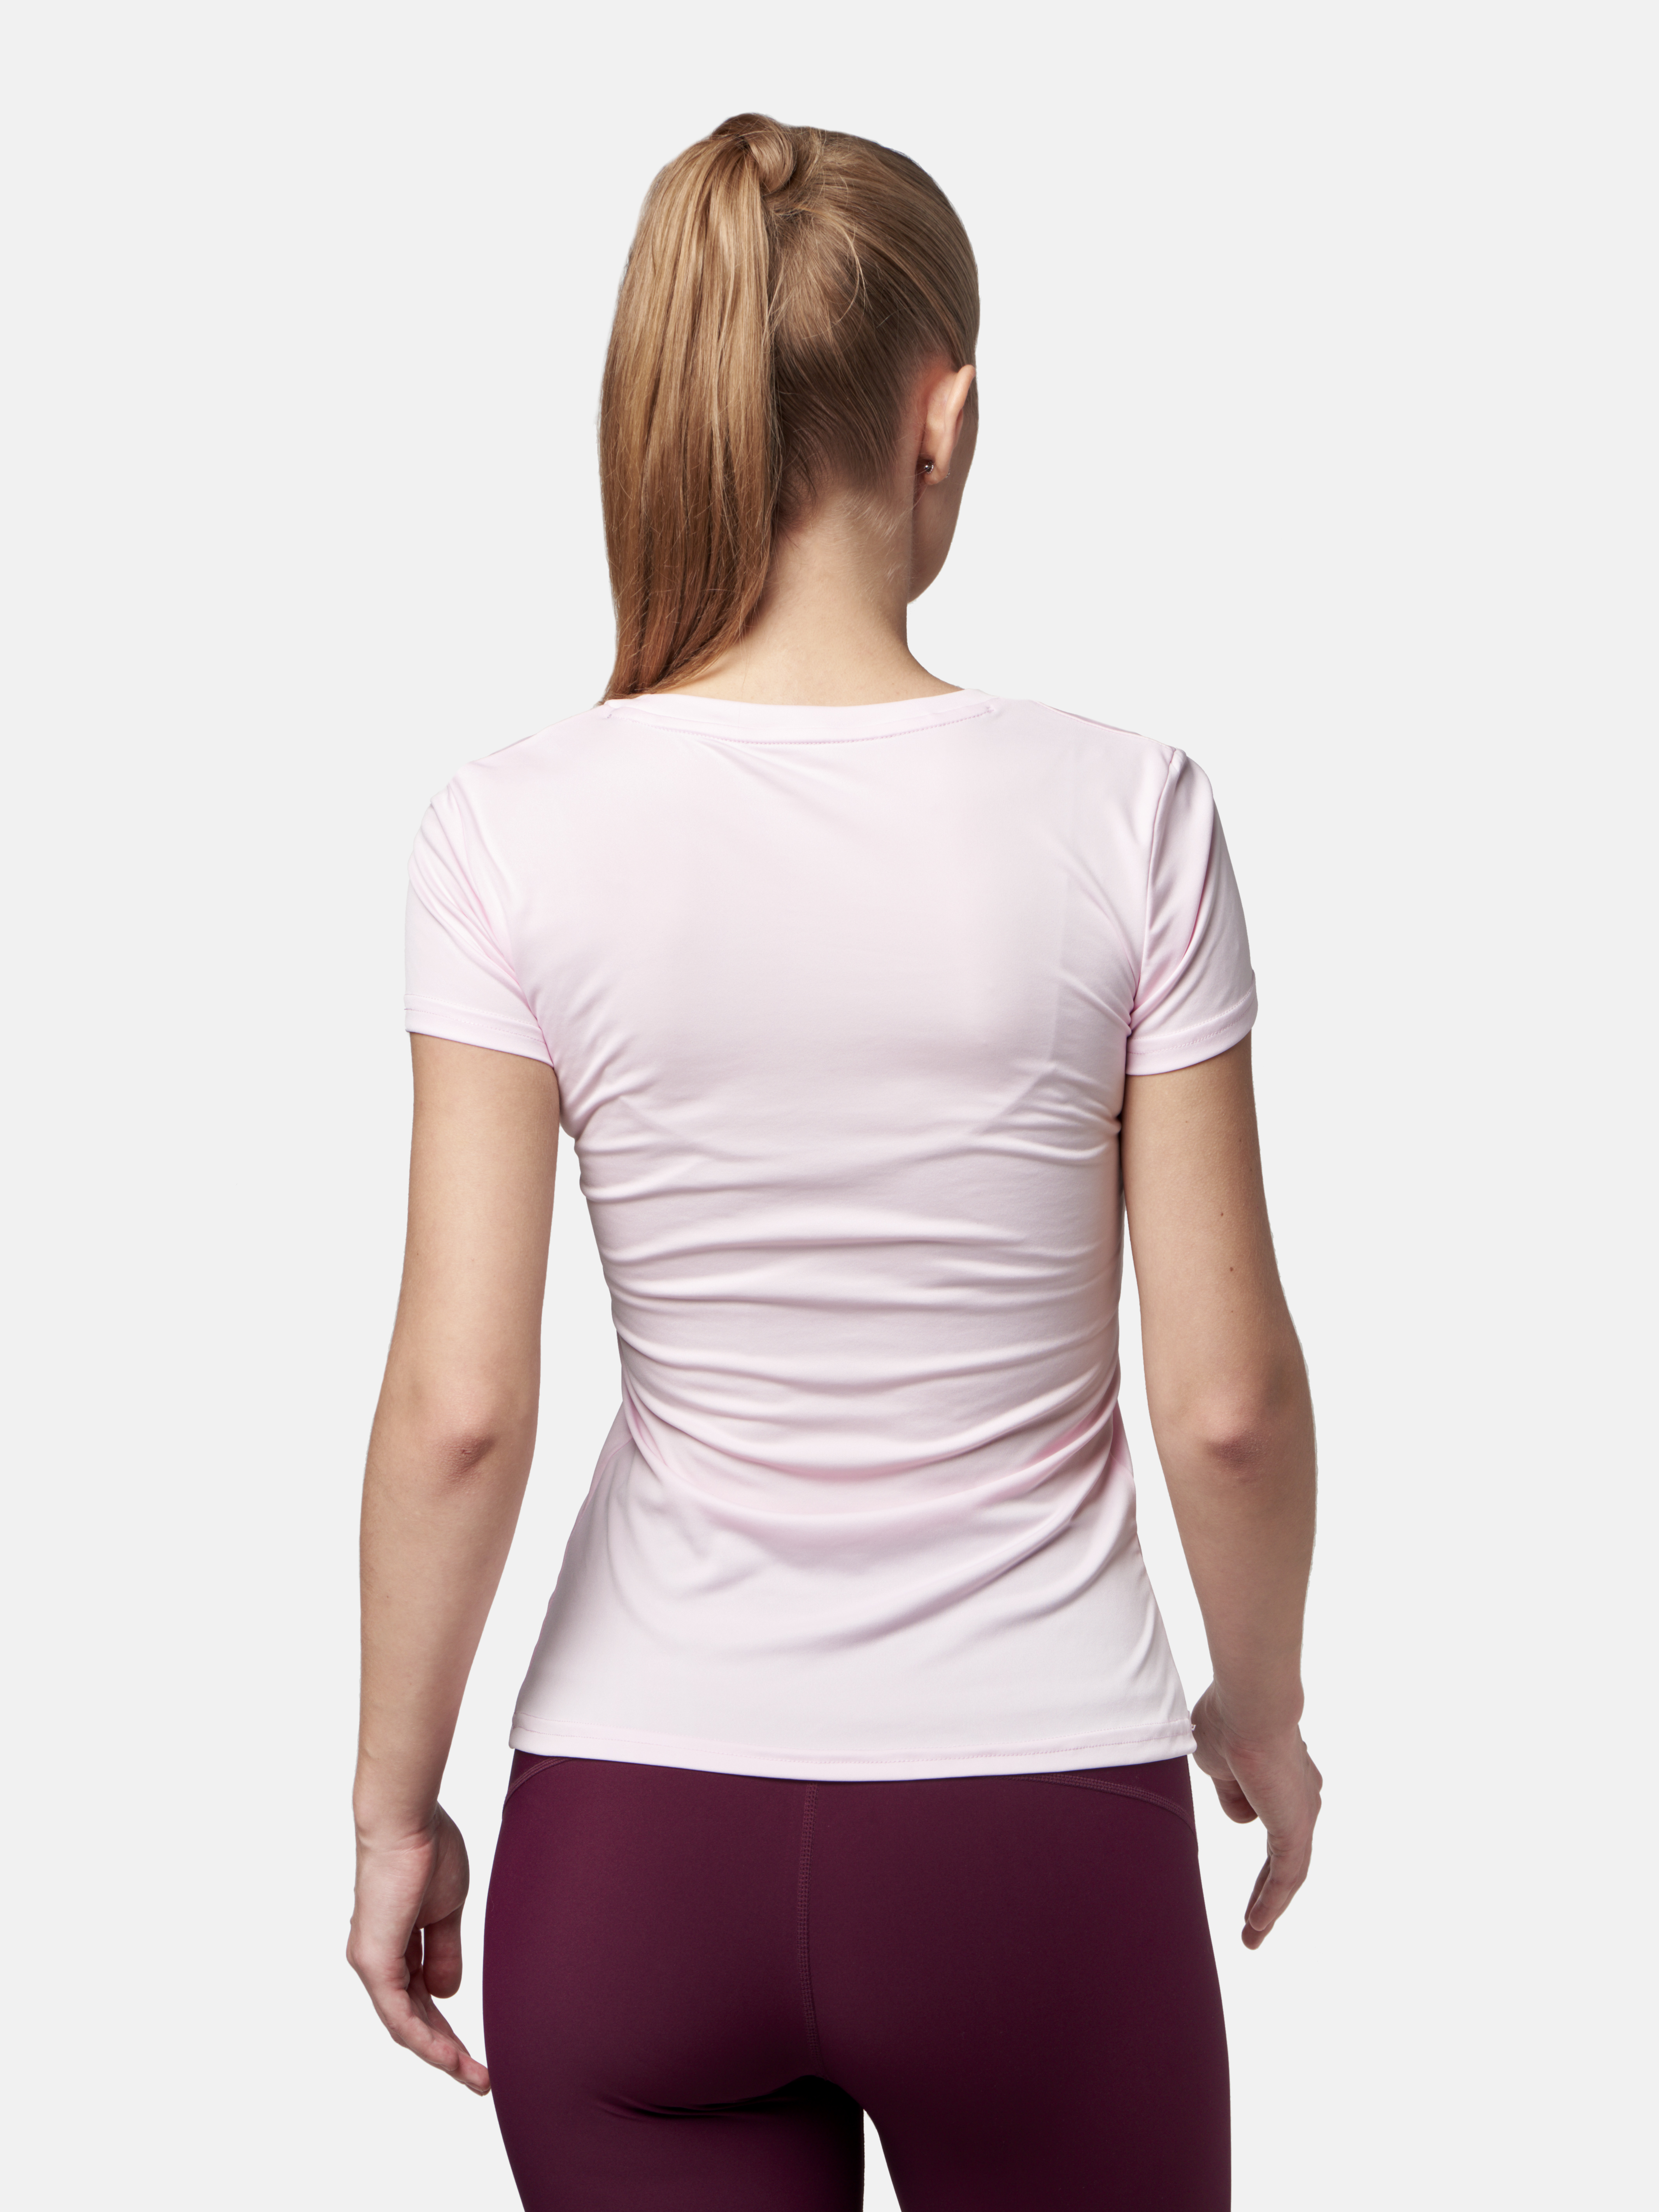 Peresvit Womens Core Training T-shirt Pink Print, Photo No. 2